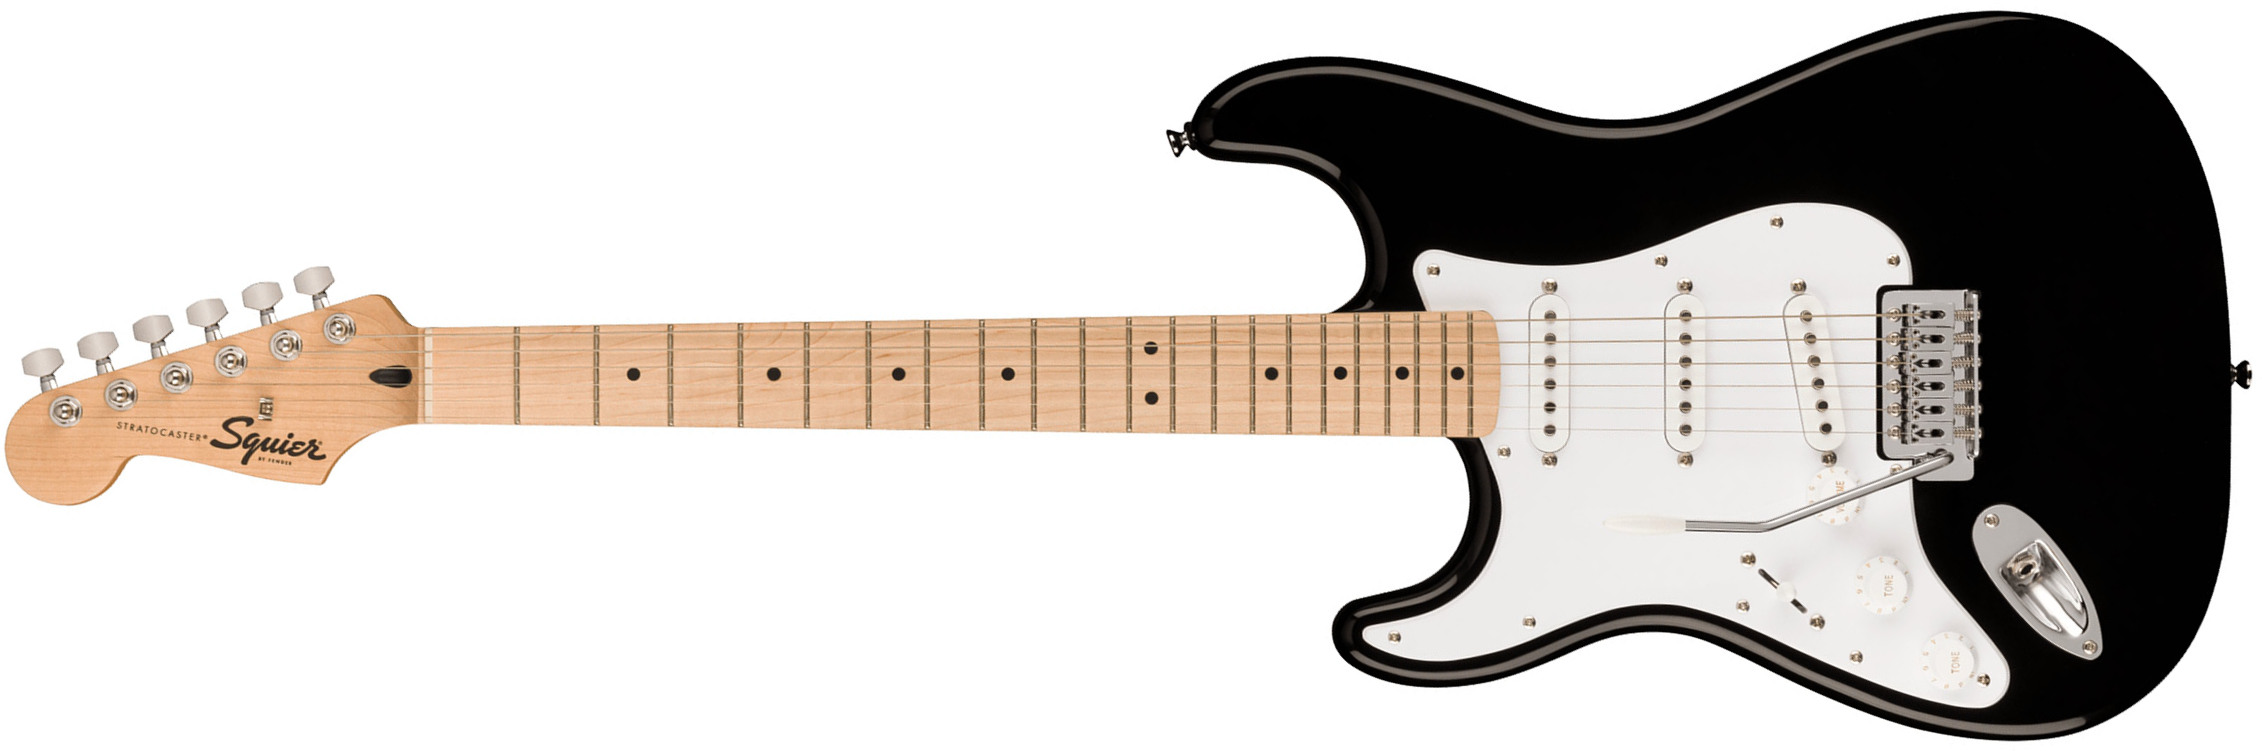 Squier Strat Sonic Lh Gaucher 3s Trem Mn - Black - Linkshandige elektrische gitaar - Main picture